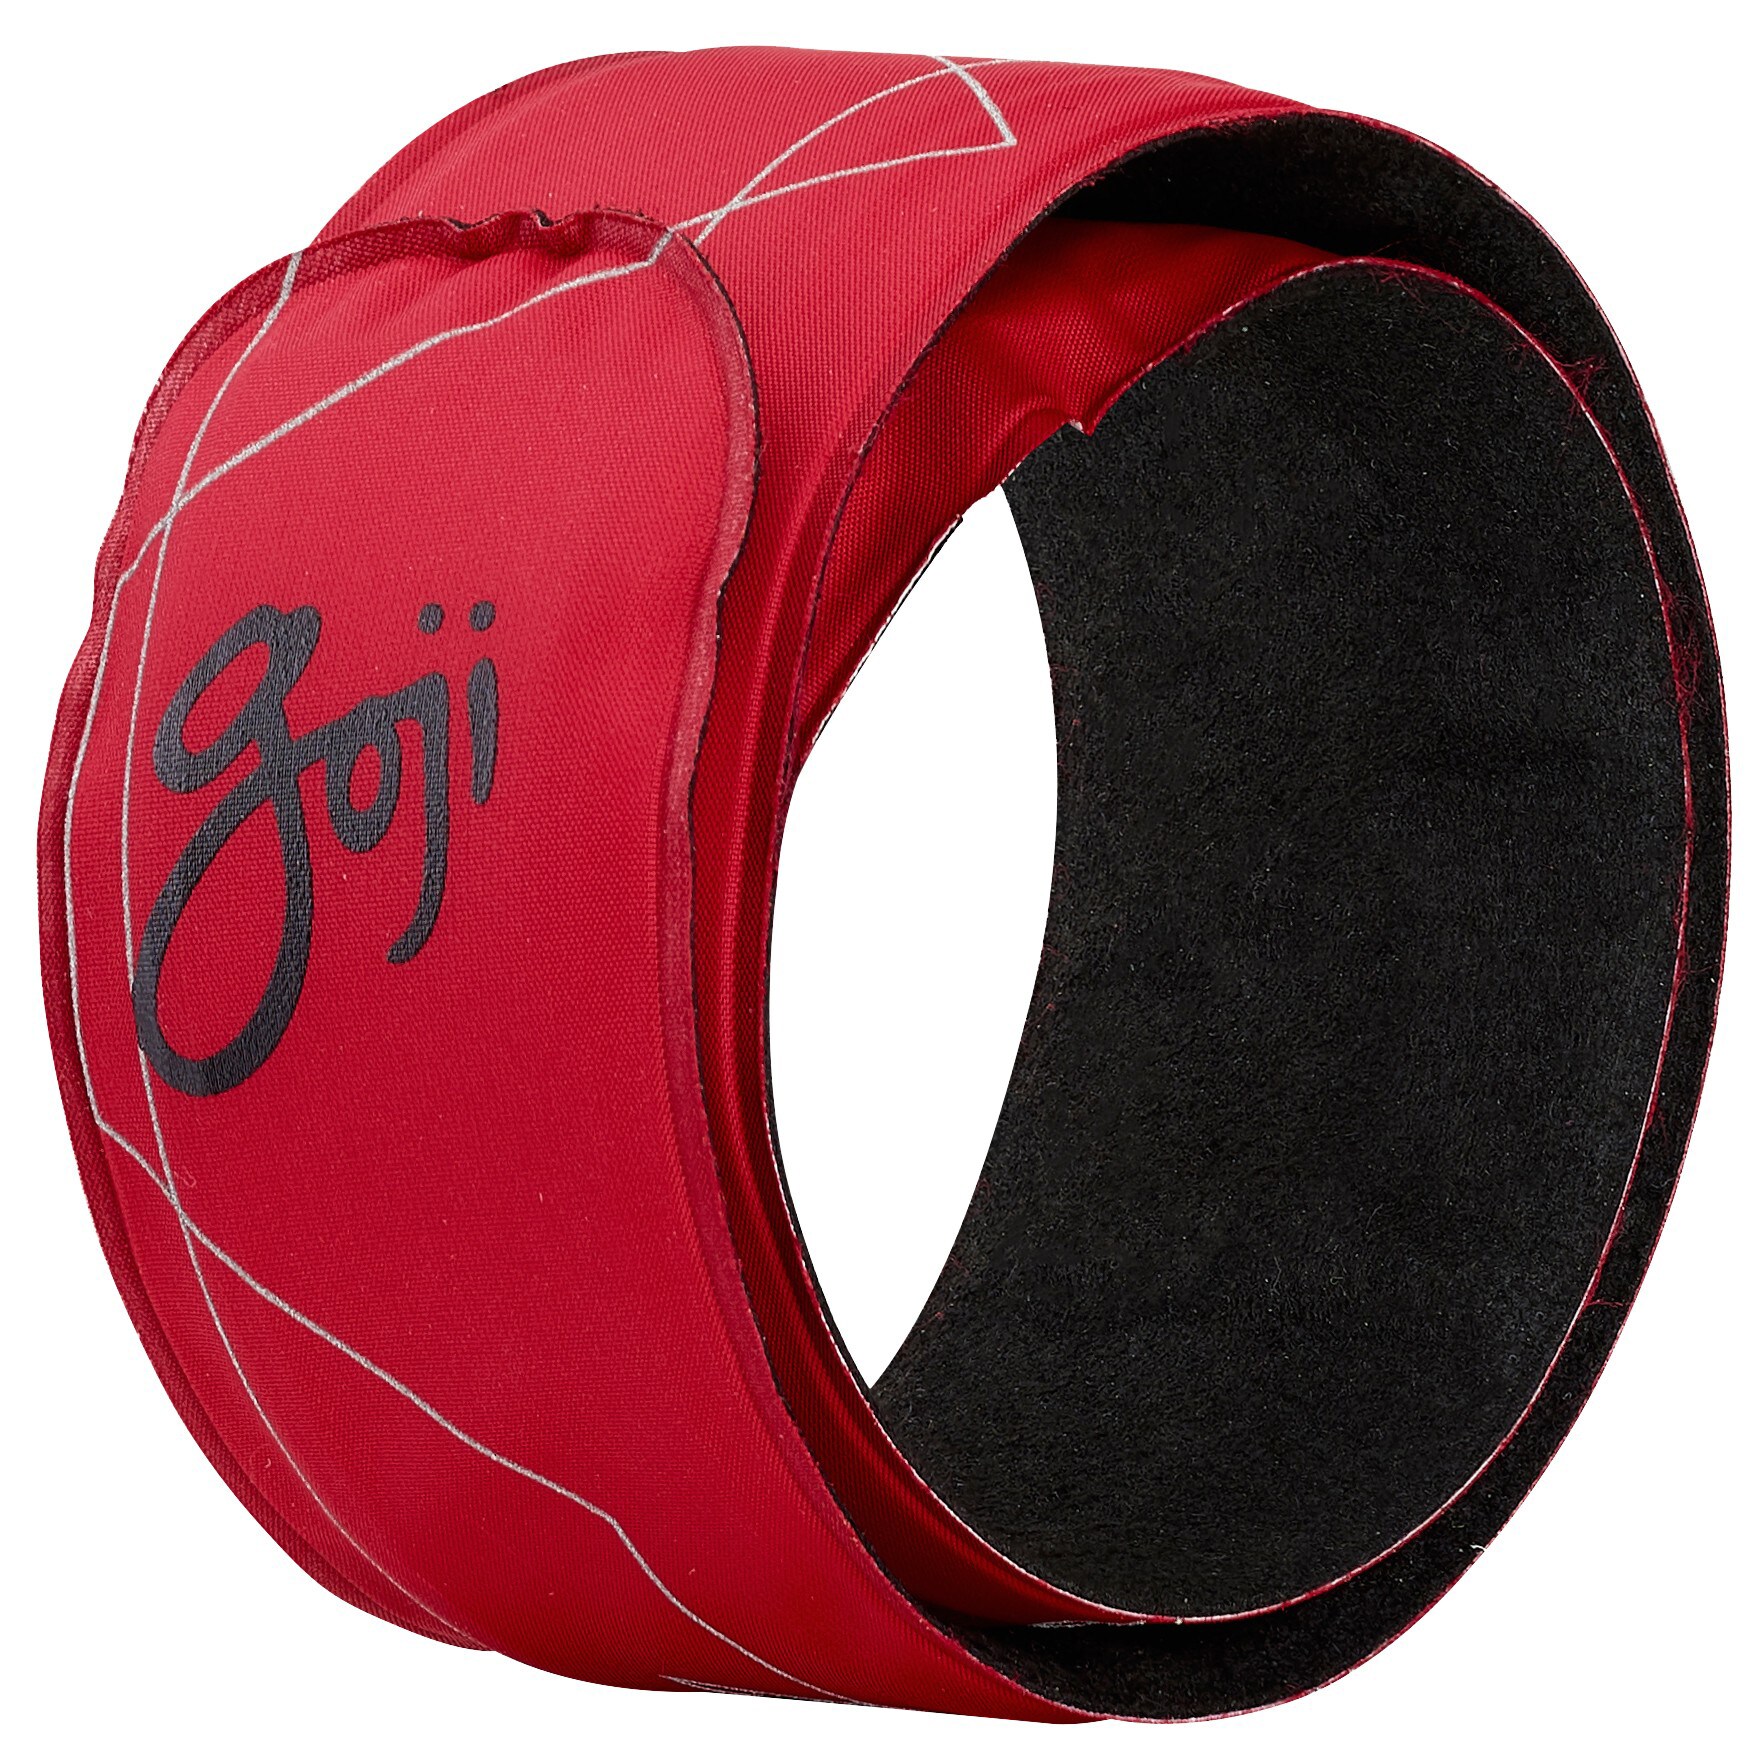 Goji LED armbånd (rød) - Treningsutstyr og tilbehør - Elkjøp